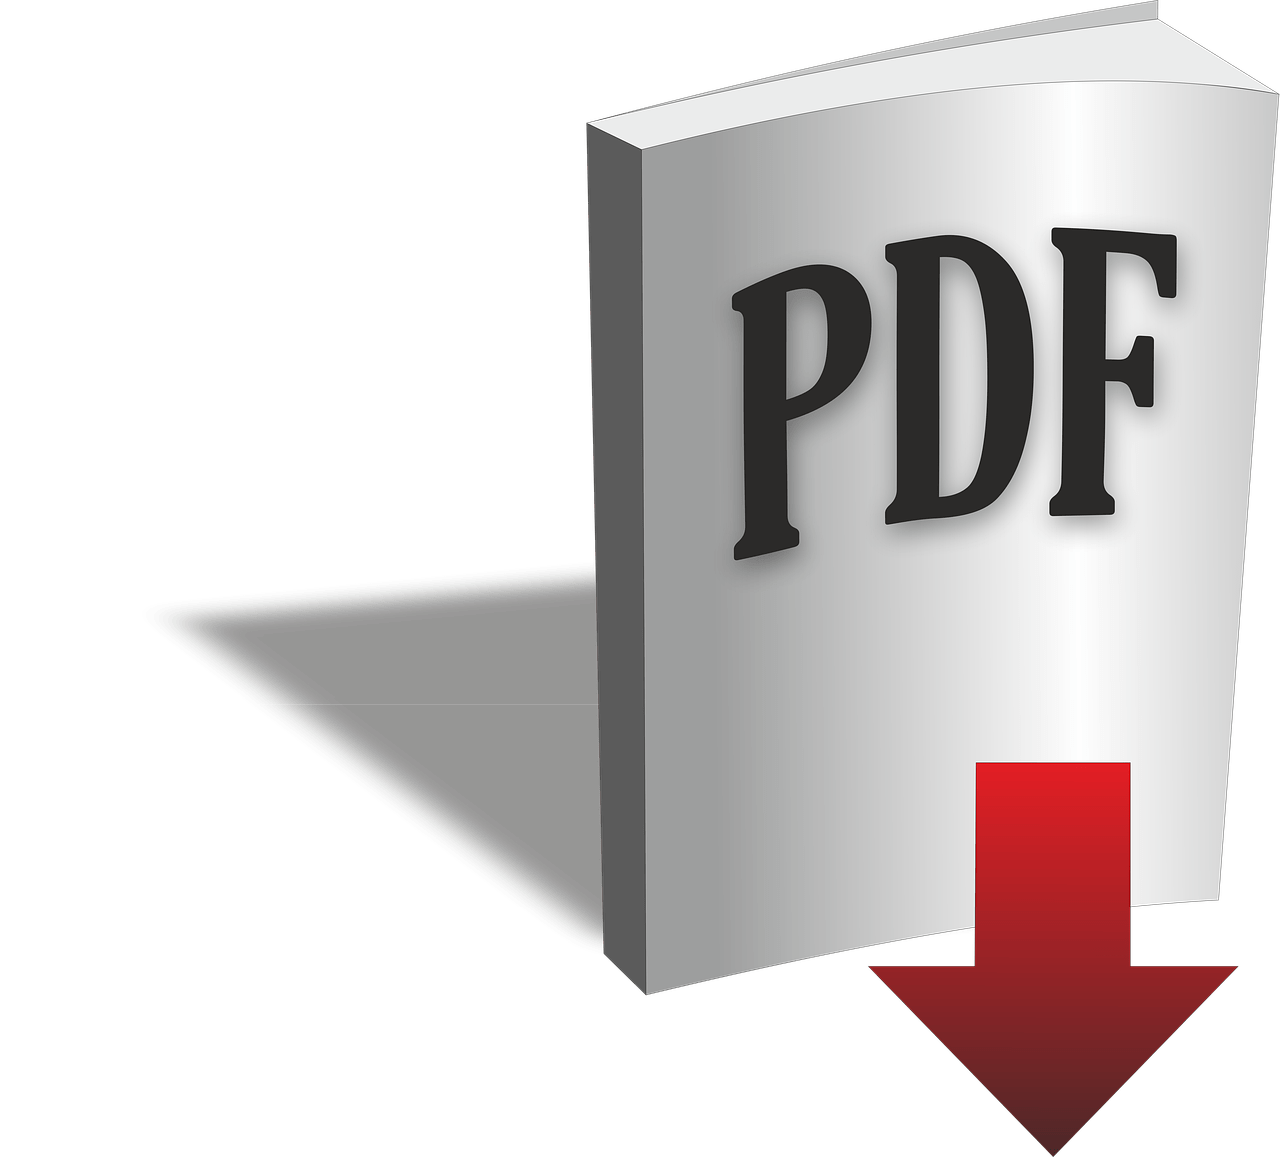 pdf to png